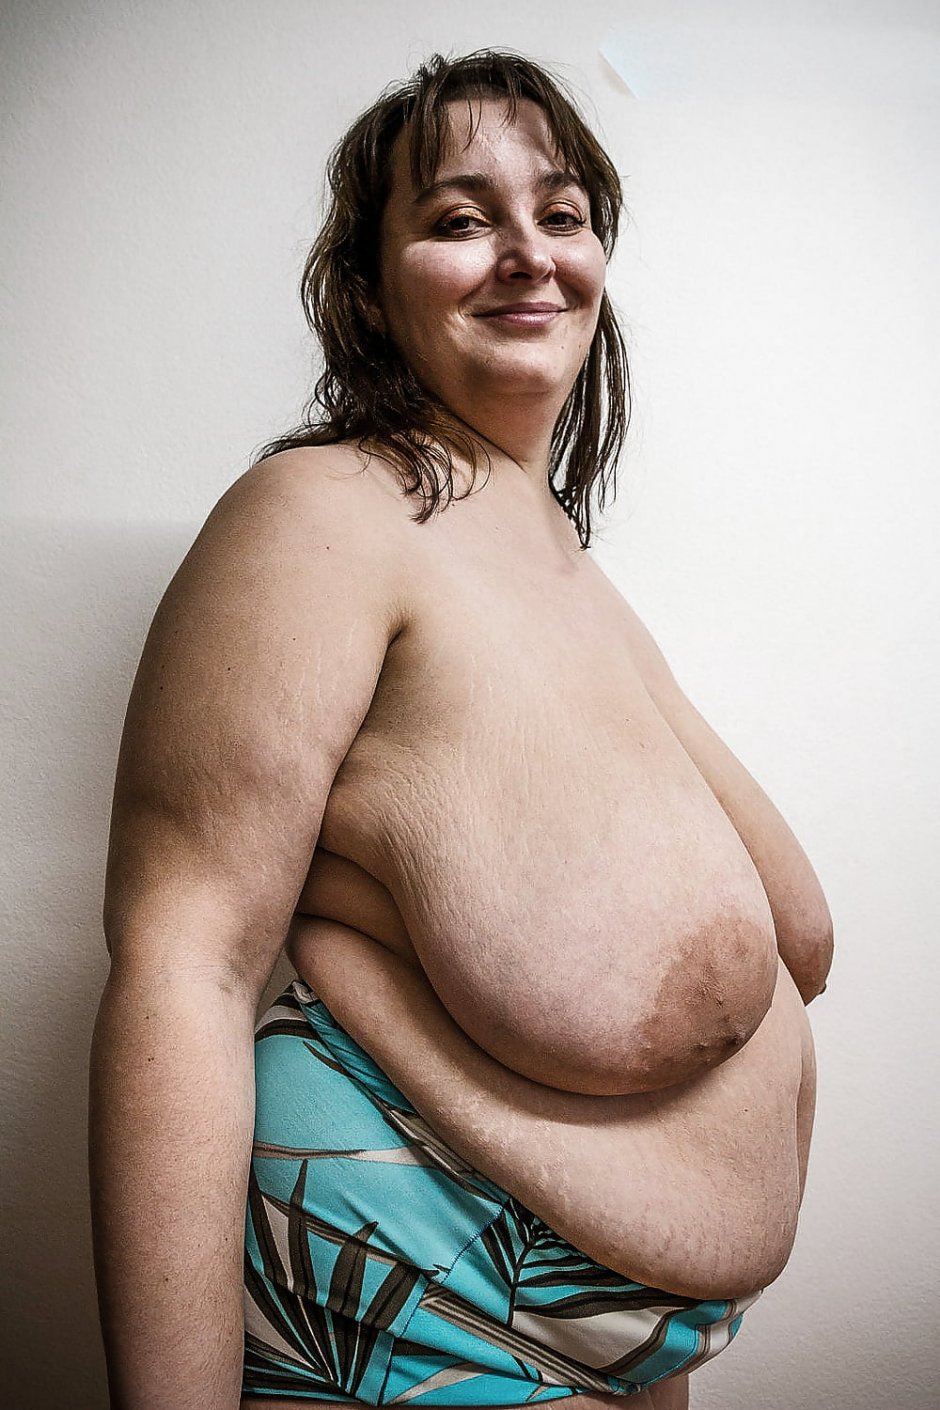 висячие груди у толстых женщин фото 6